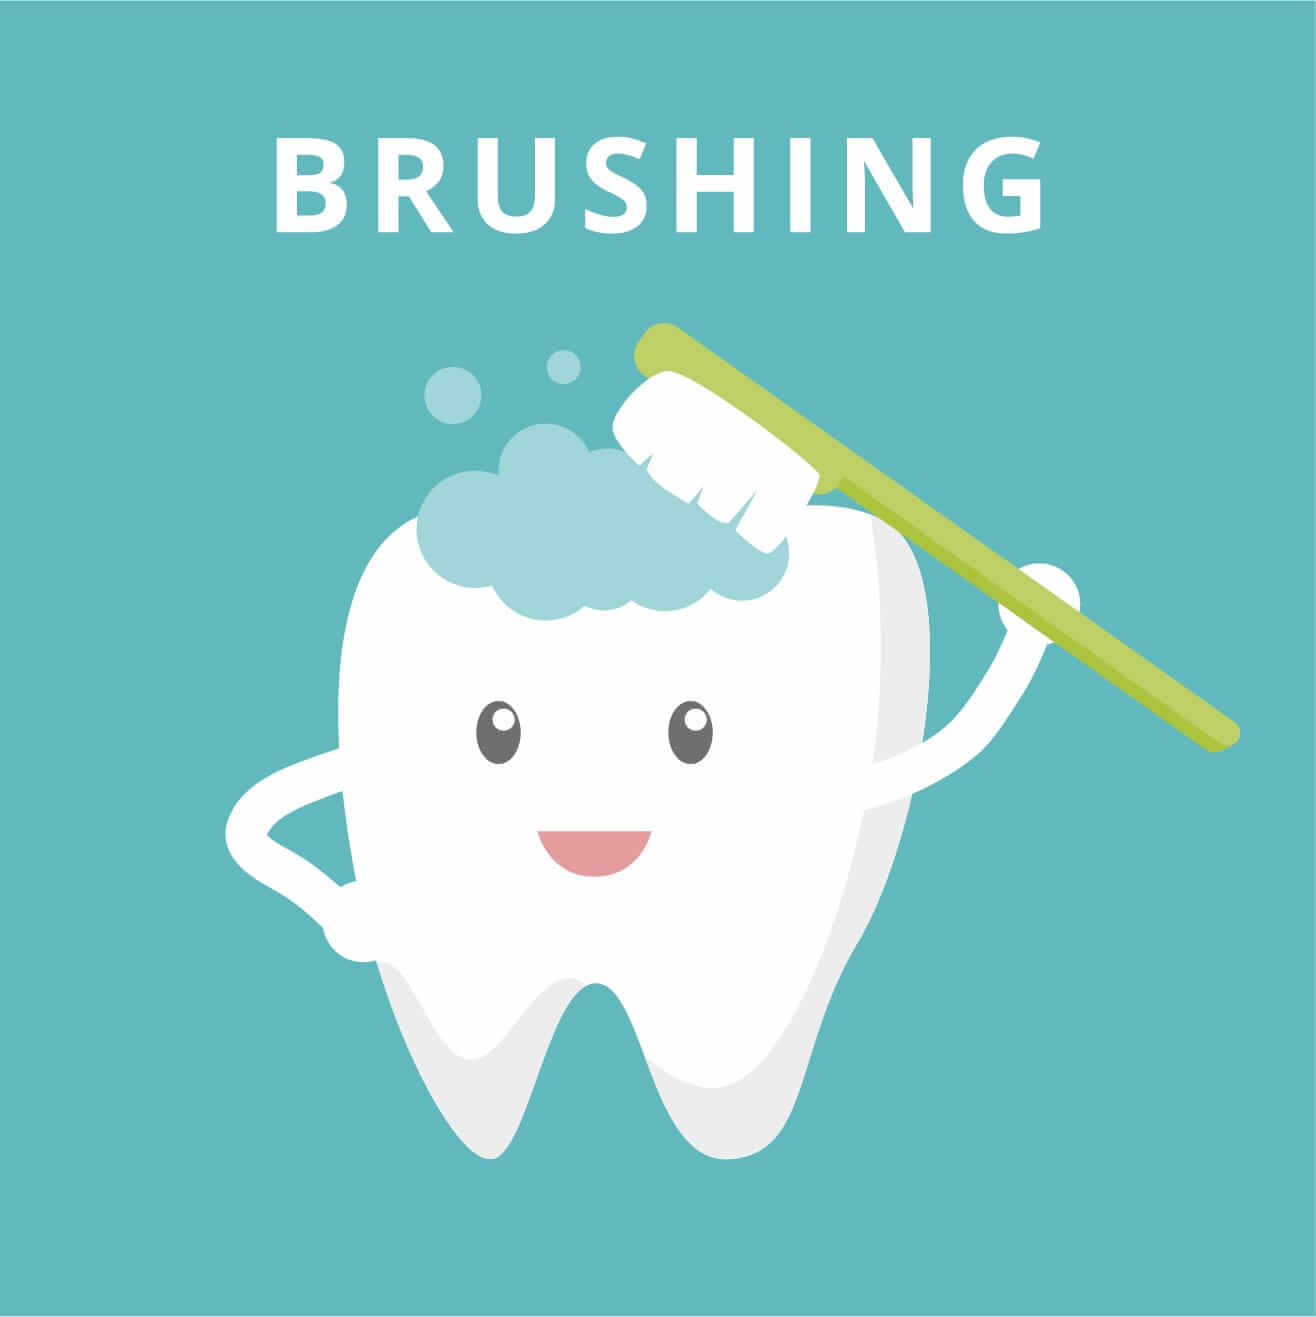 Правильно чистить зубы до завтрака или. Правильно чистить зубы до завтрака или после завтрака. Когда лучше чистить зубы до или после завтрака. Зубы надо чистить до завтрака или после завтрака. Утром нужно чистить зубы до еды или после.